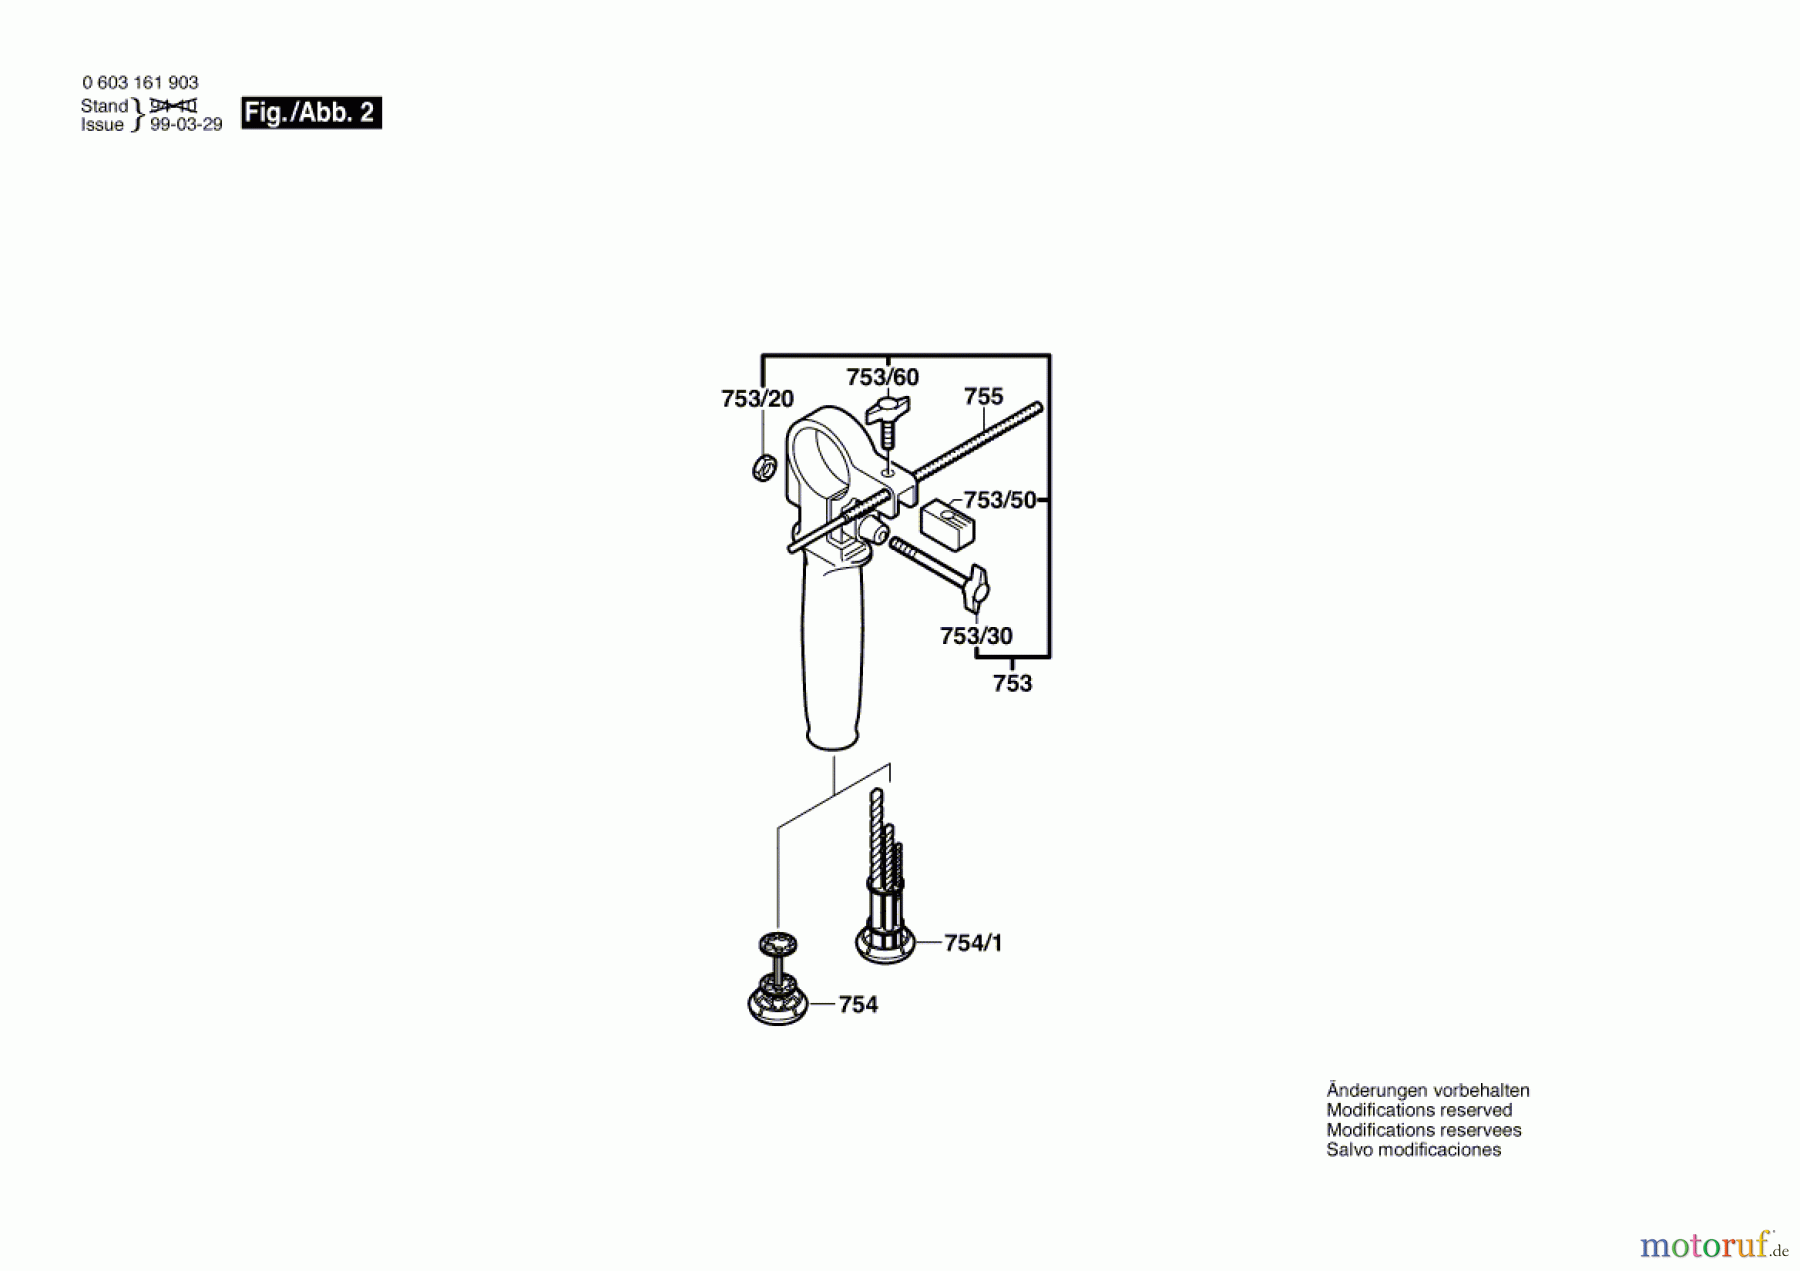  Bosch Werkzeug Schlagbohrmaschine CSB 650-2 RP Seite 2